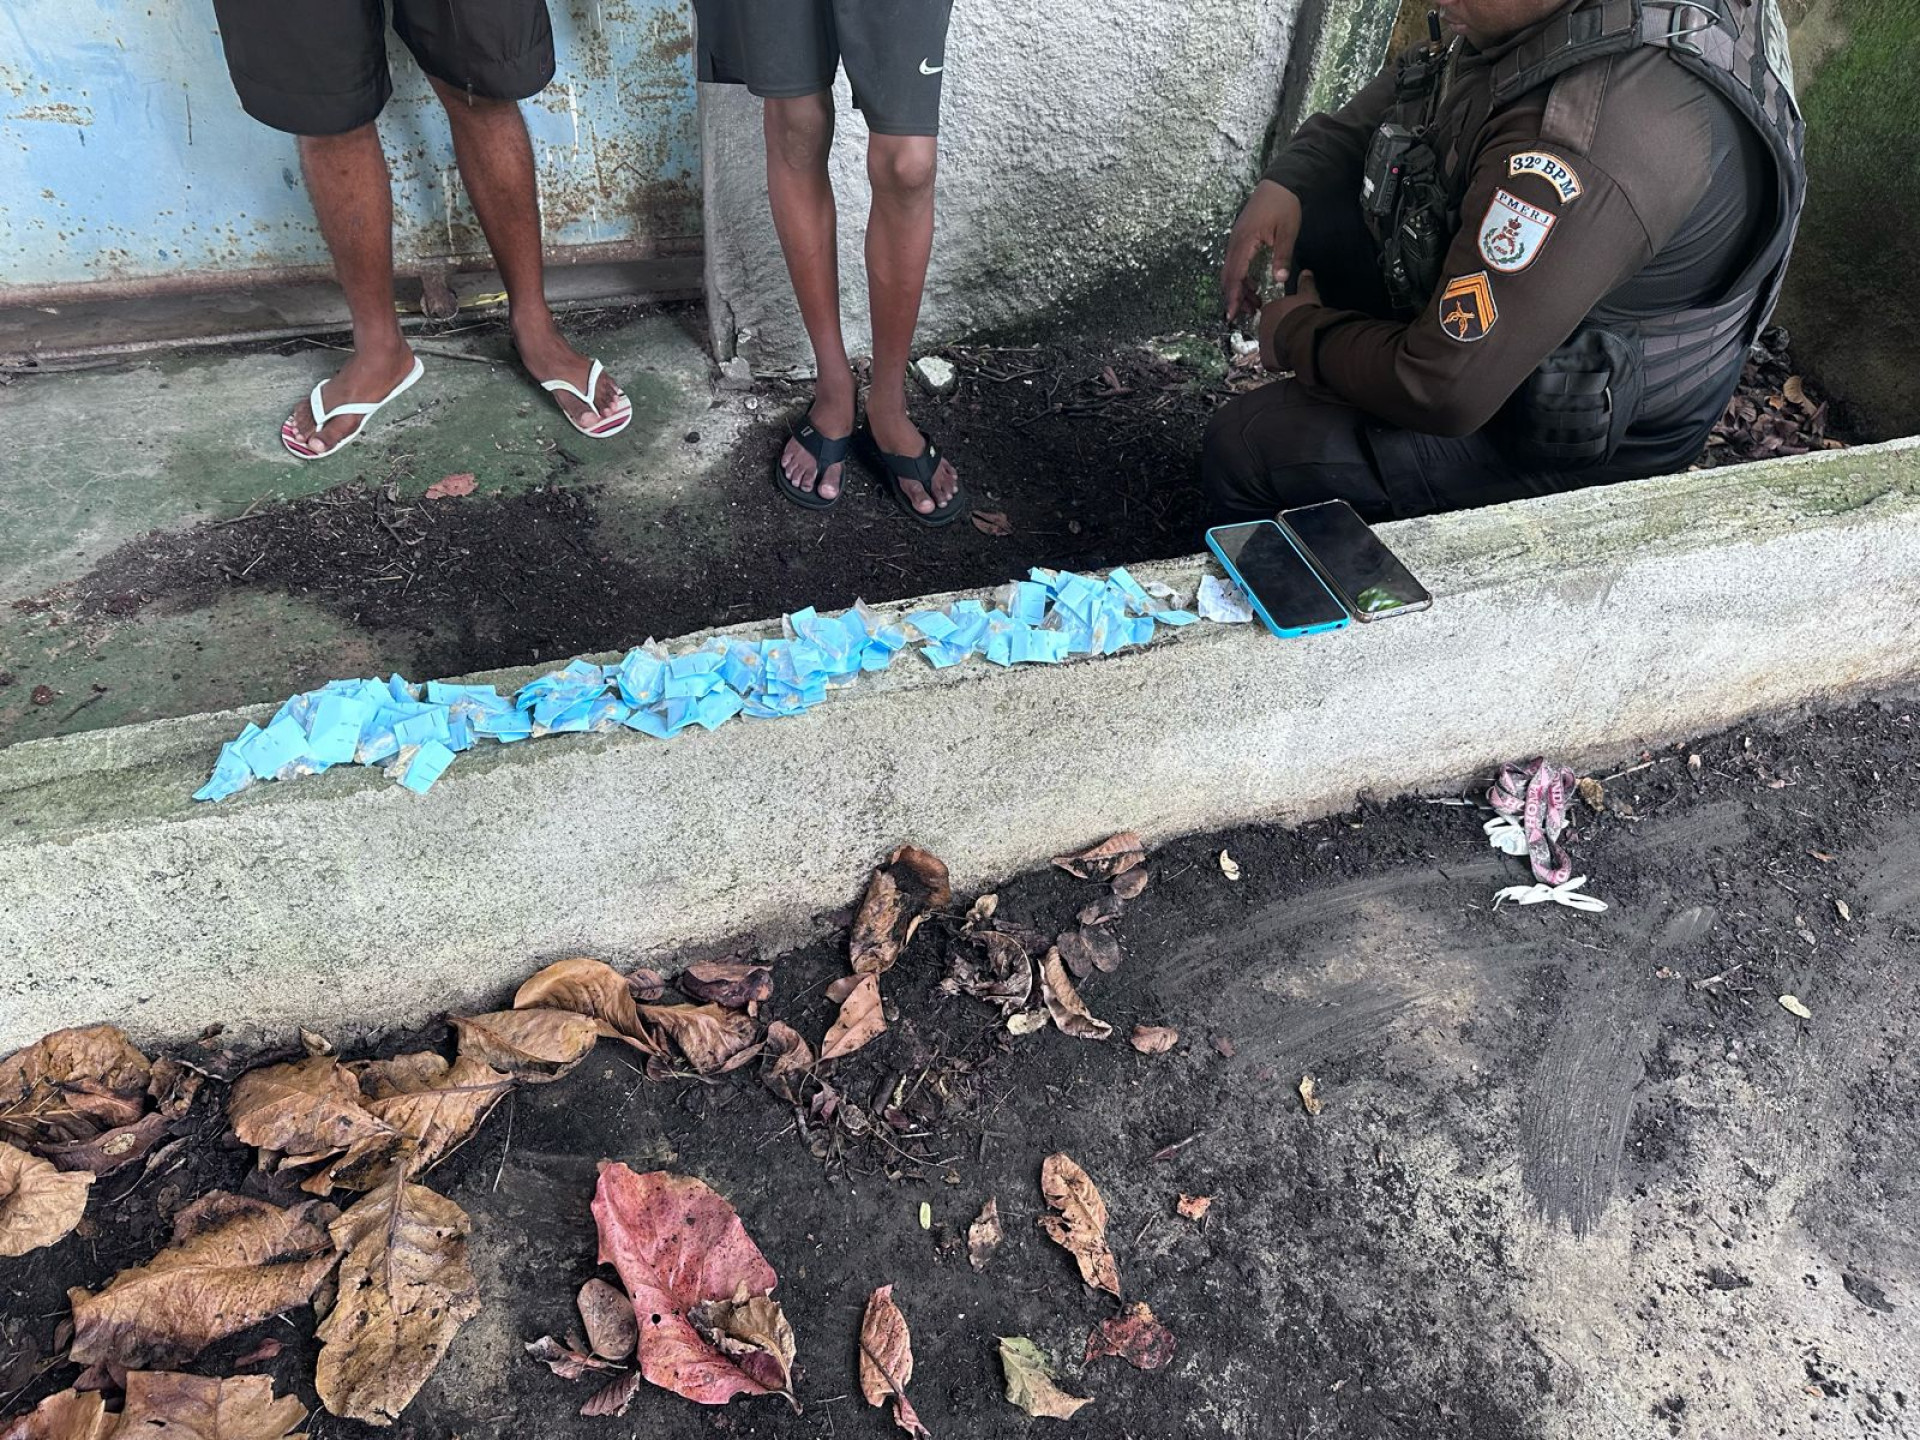 Durante a abordagem, foram encontradas 105 pedras de crack, dois aparelhos celulares e uma chave de motocicleta na posse deles - Foto: Divulgação